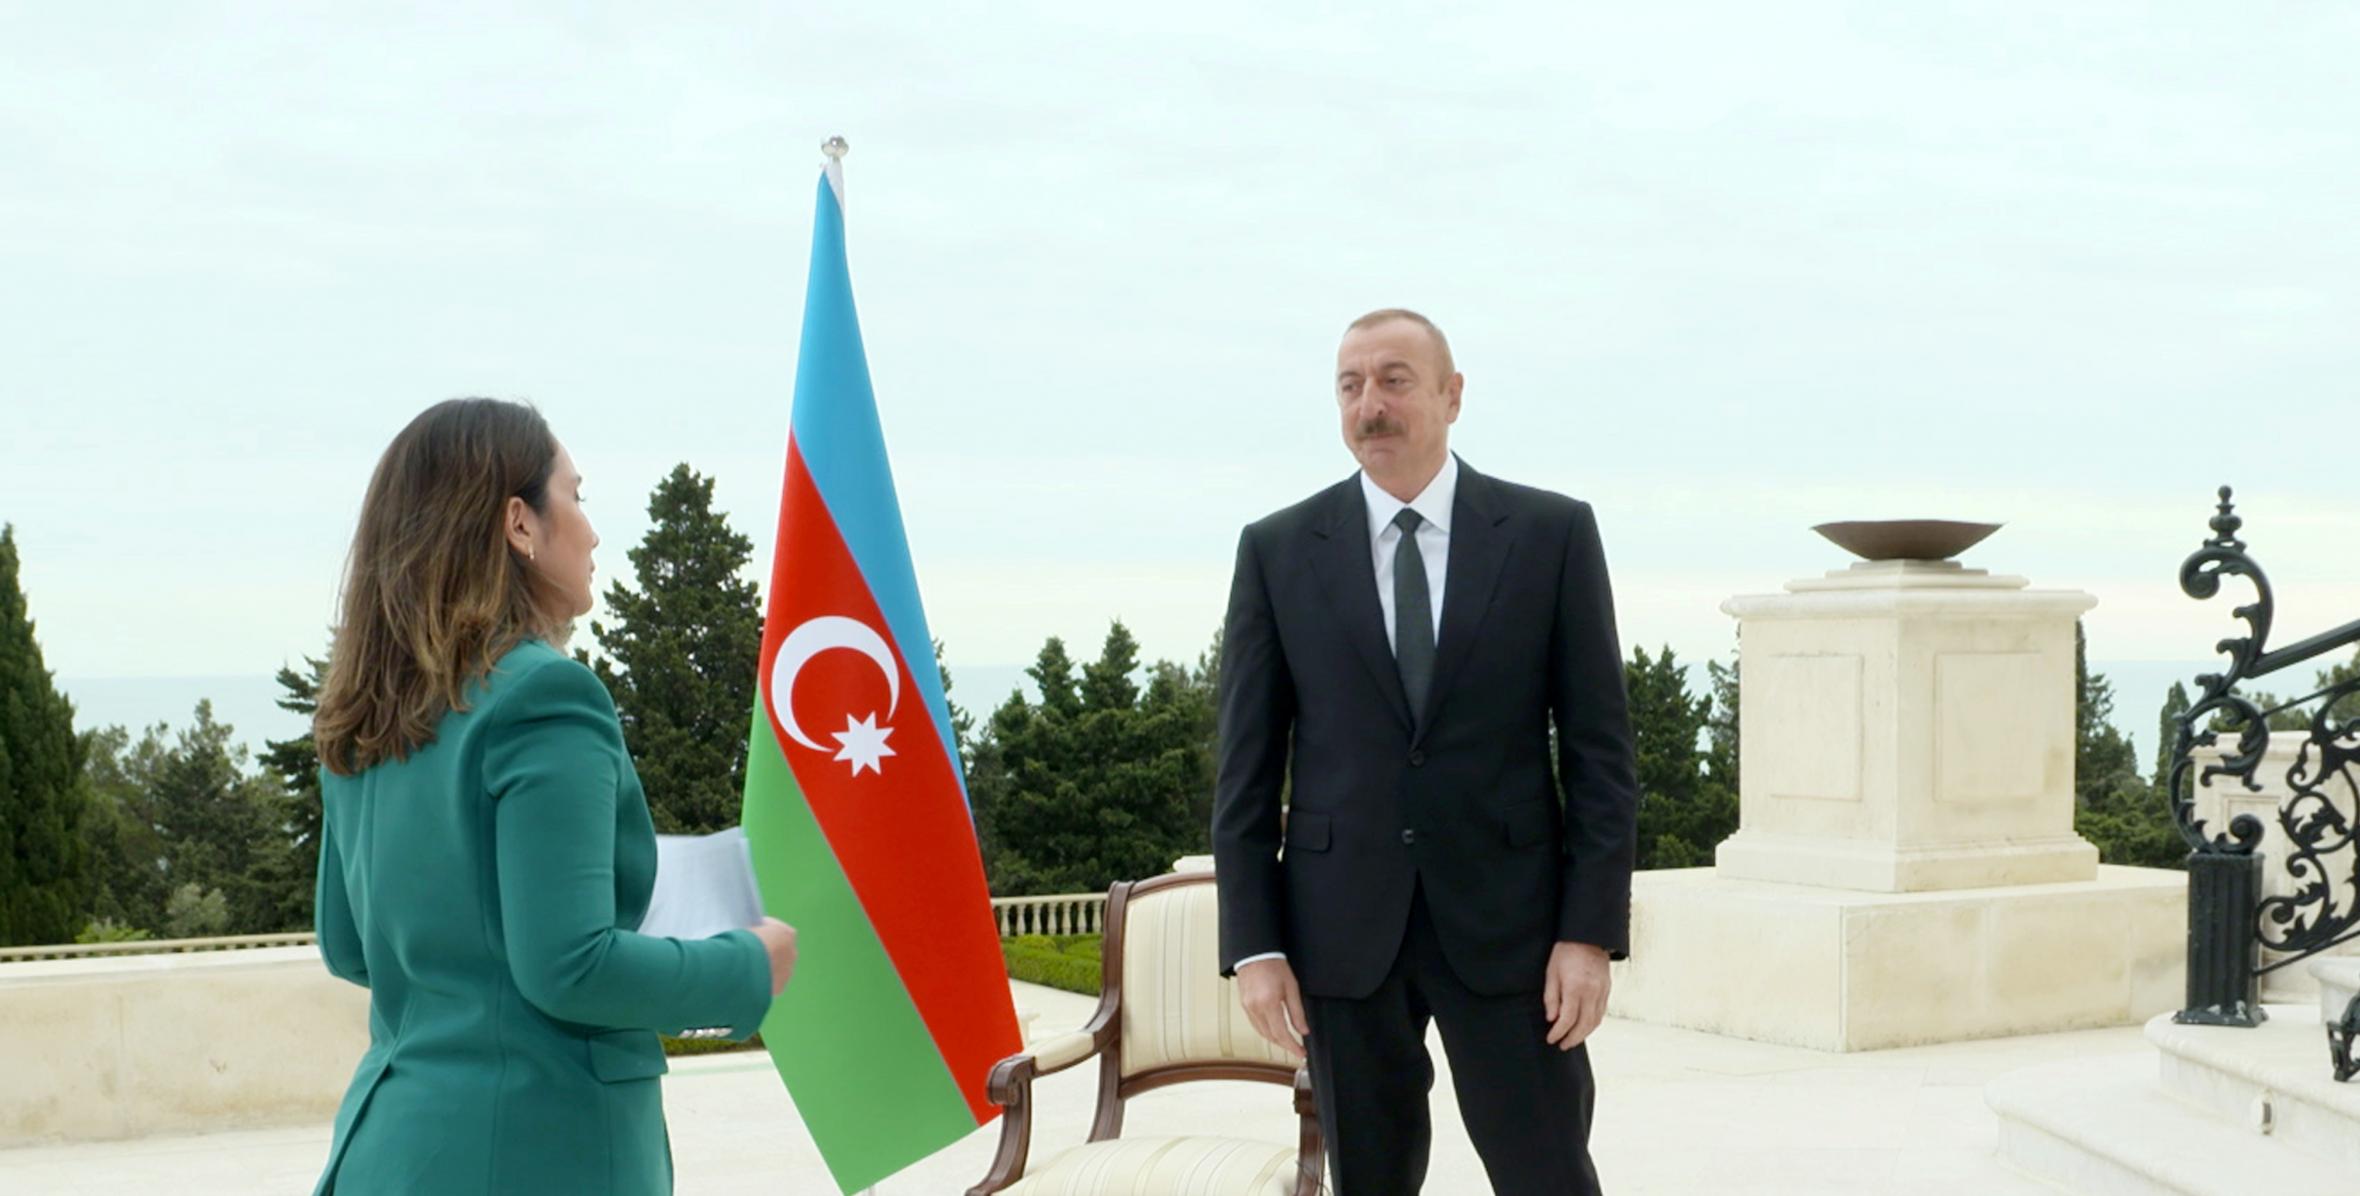 Ilham Aliyev was interviewed by Al Jazeera TV channel